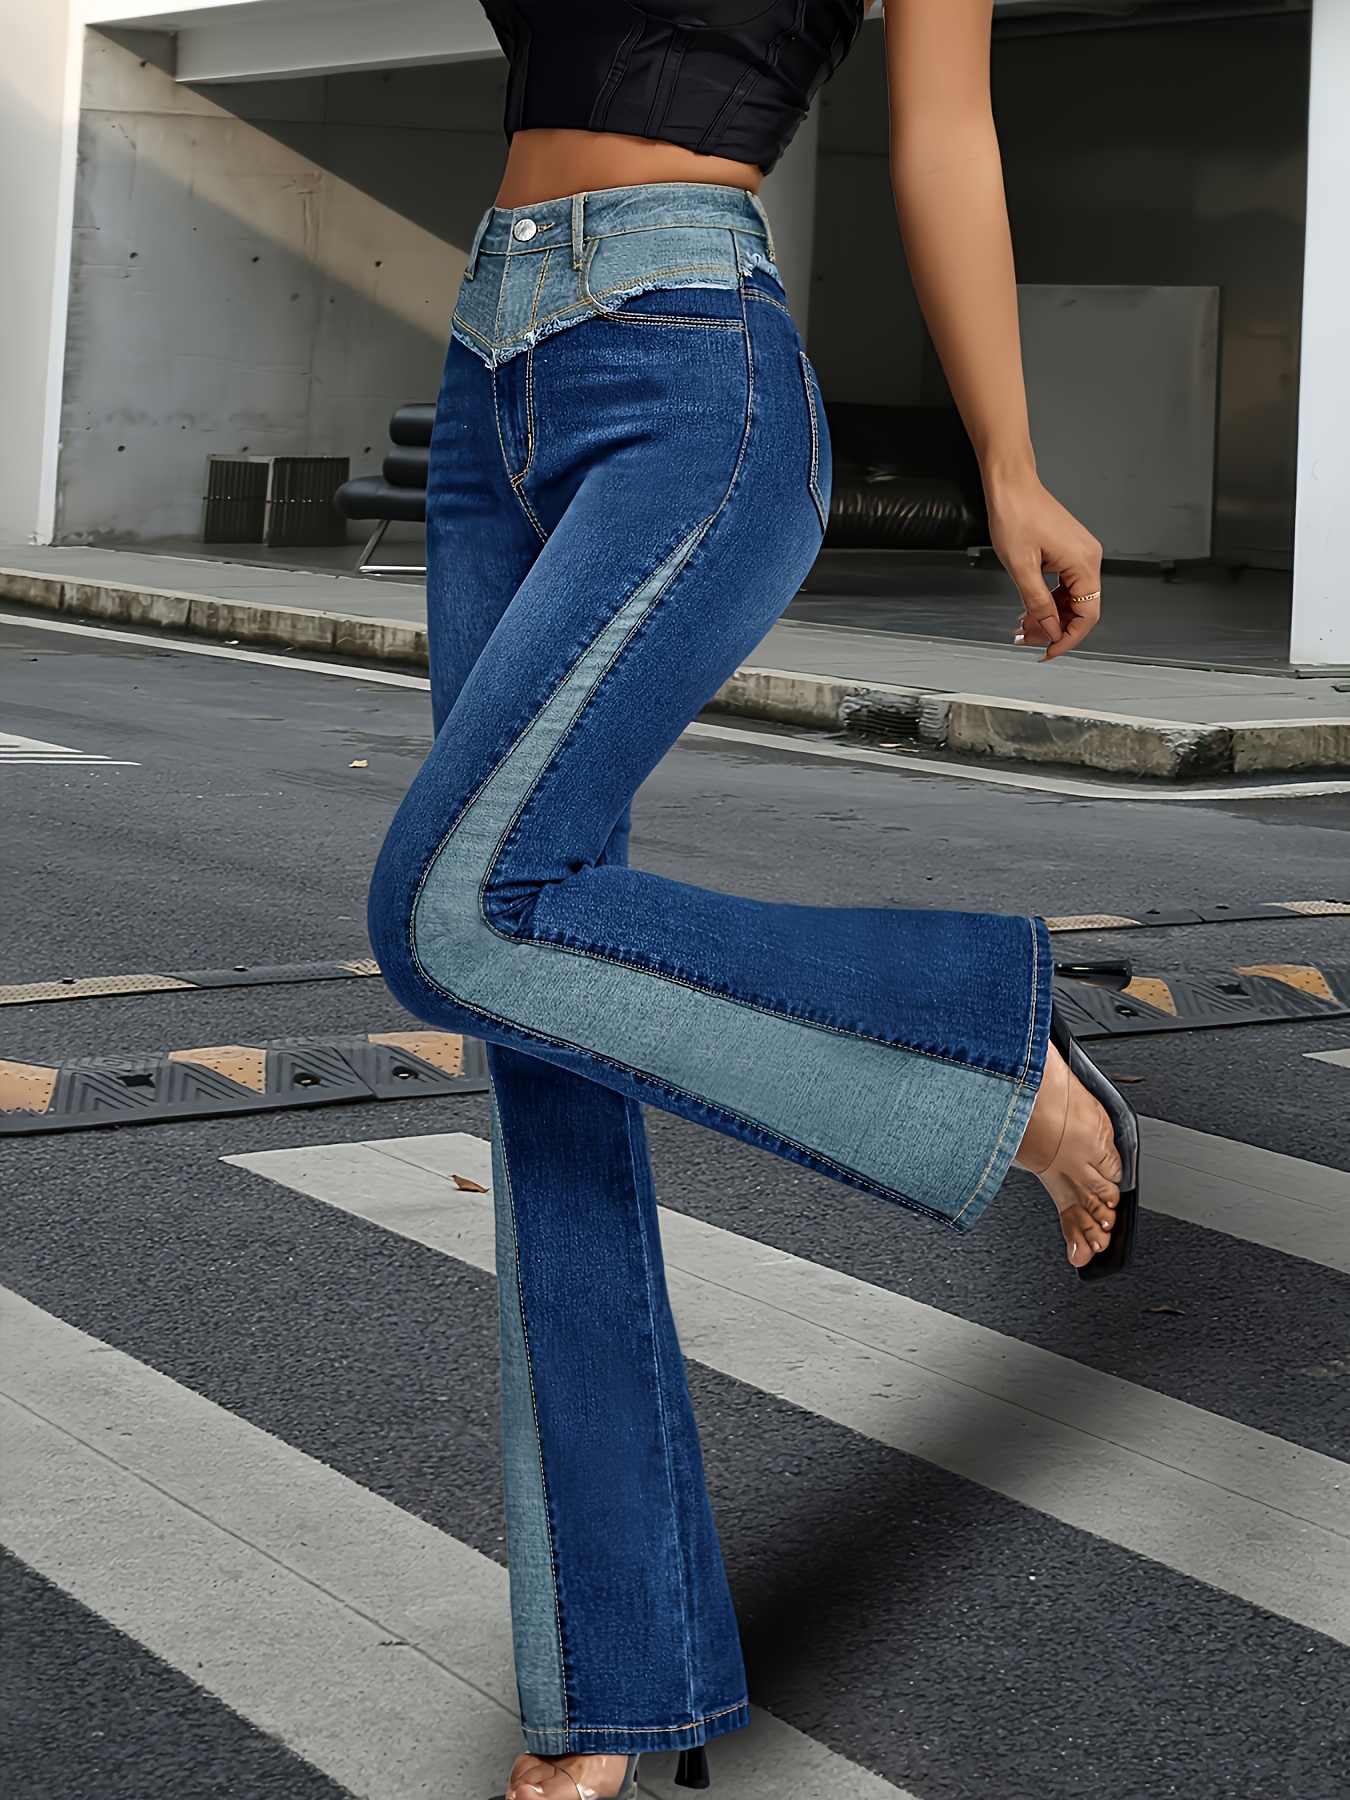 Jeans & Trousers, Women's / Girls Bottom Wear